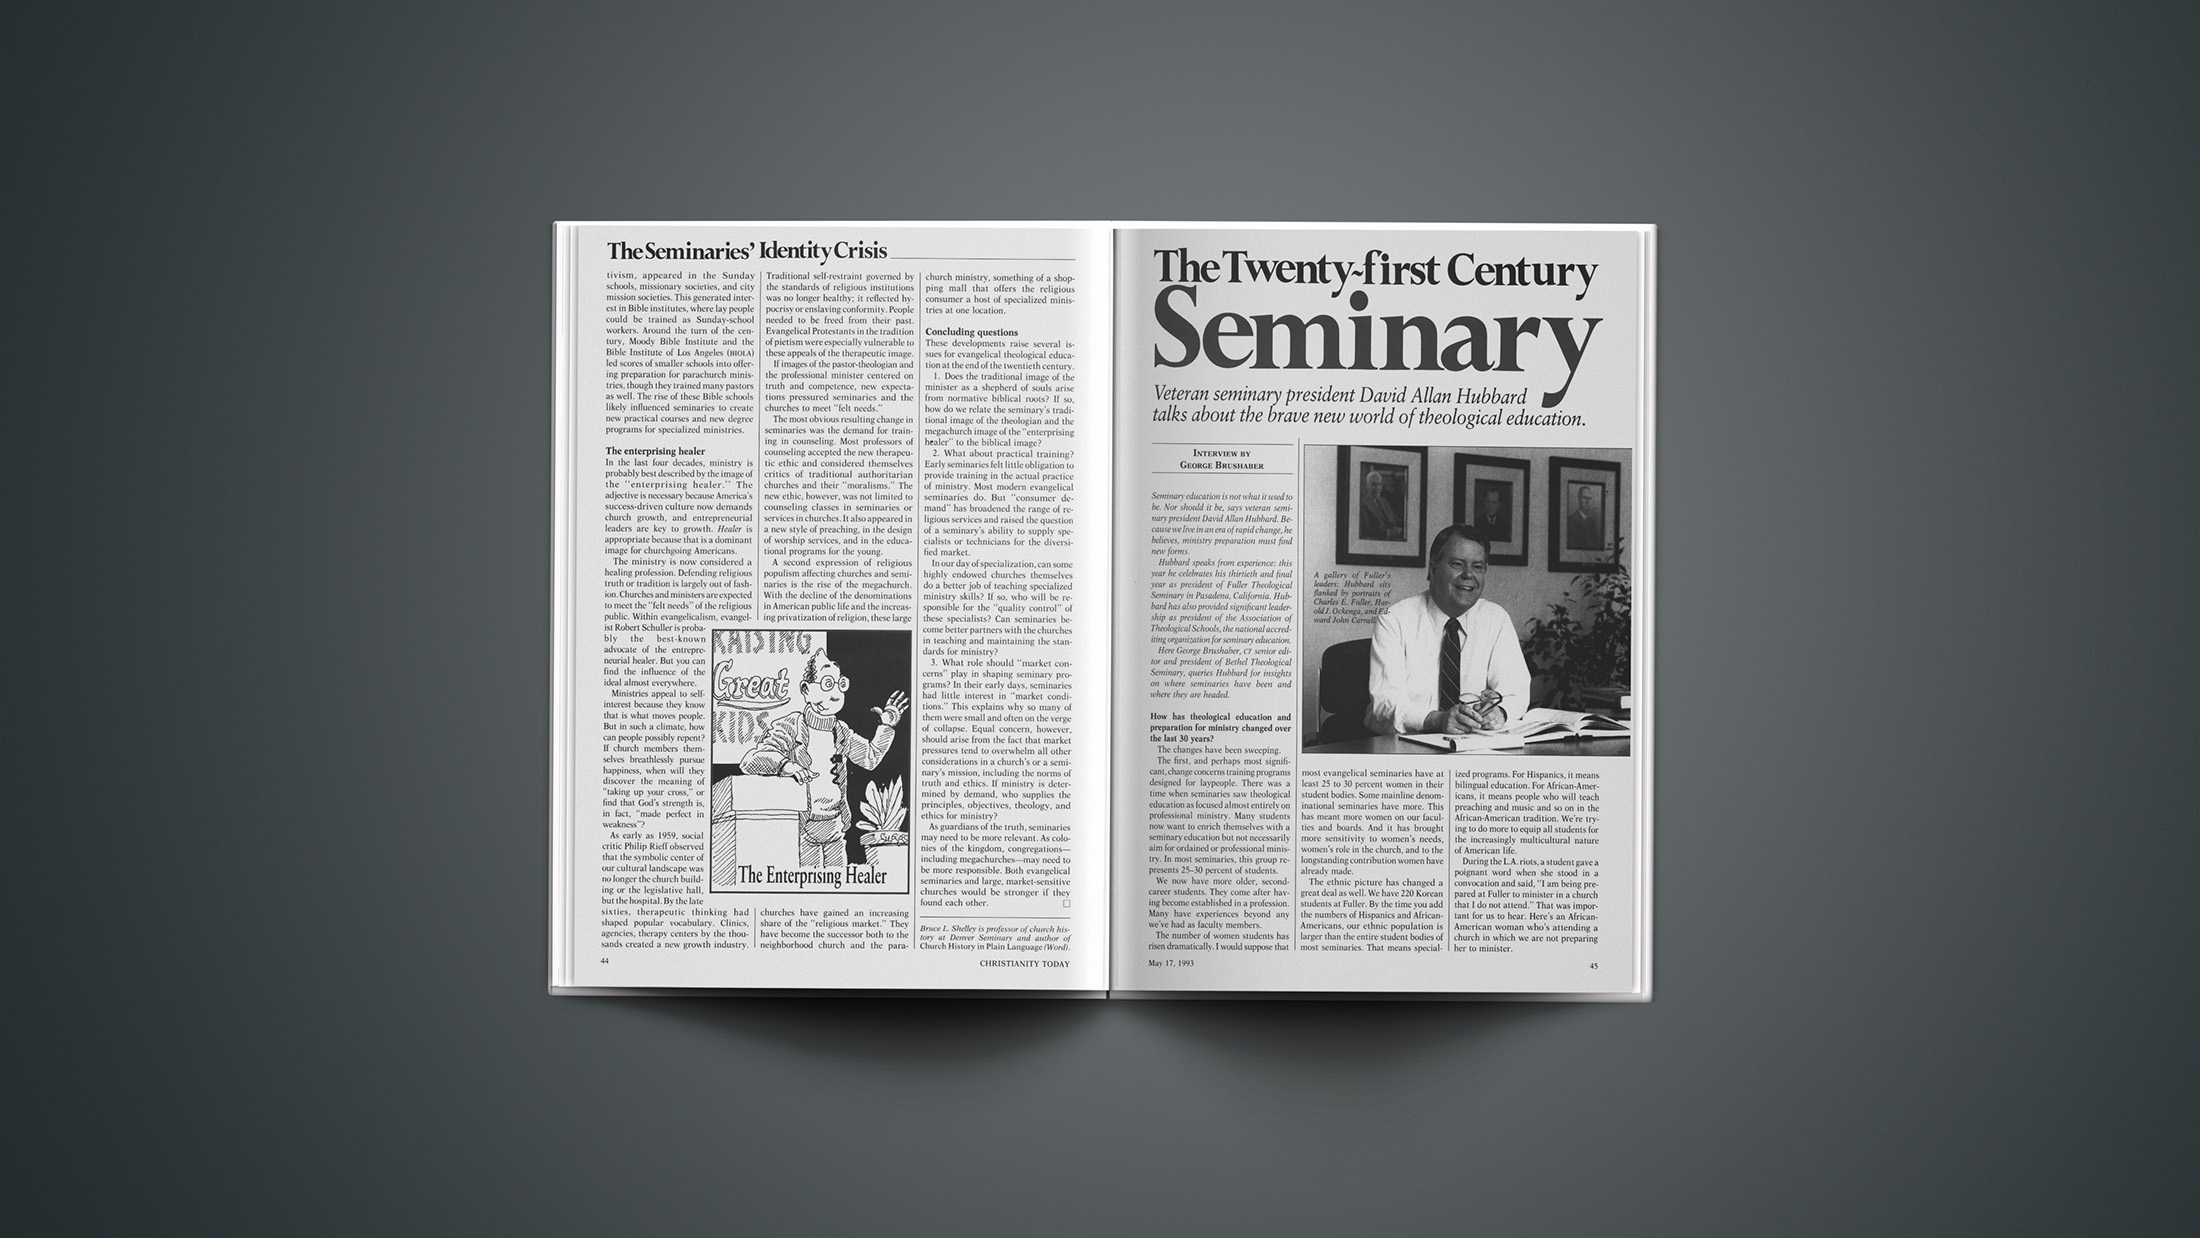 A Century of Seminary